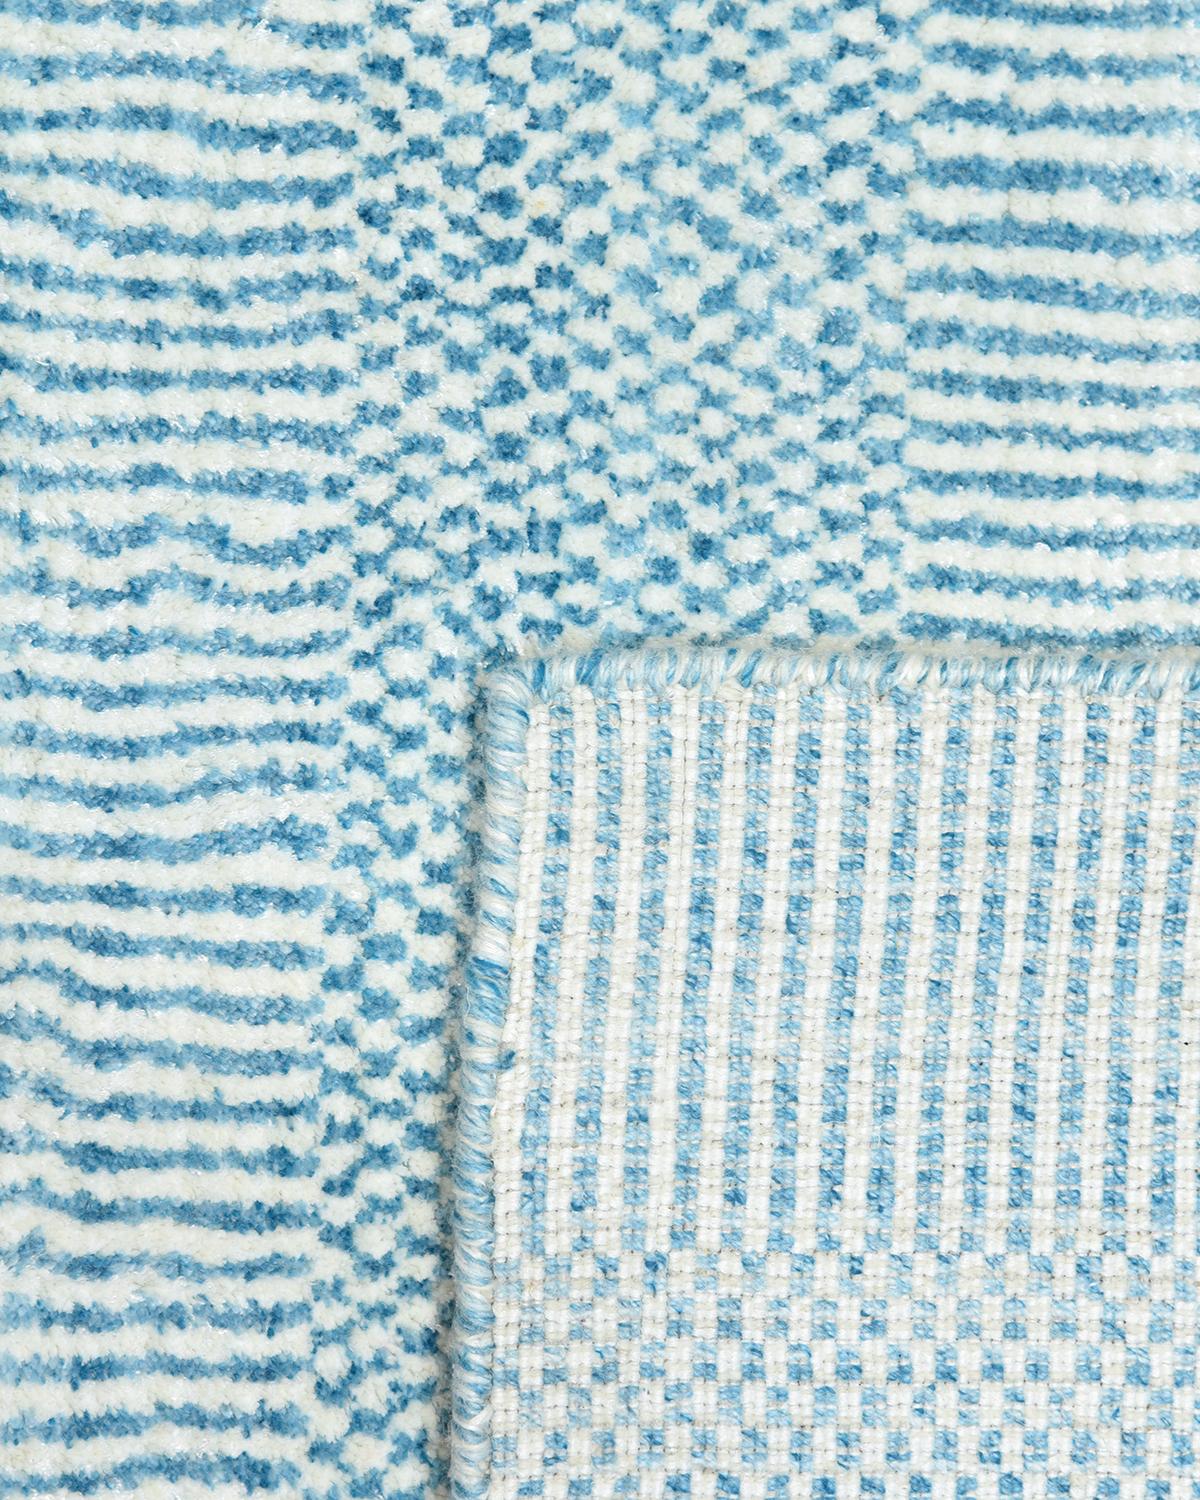 Couleur : Aqua, fabriqué en Inde. 60% laine, 30% viscose, 10% coton. De subtiles rayures ton sur ton donnent à cette collection unie une profondeur et une sophistication qui lui sont propres. Ces tapis peuvent rassembler les éléments disparates